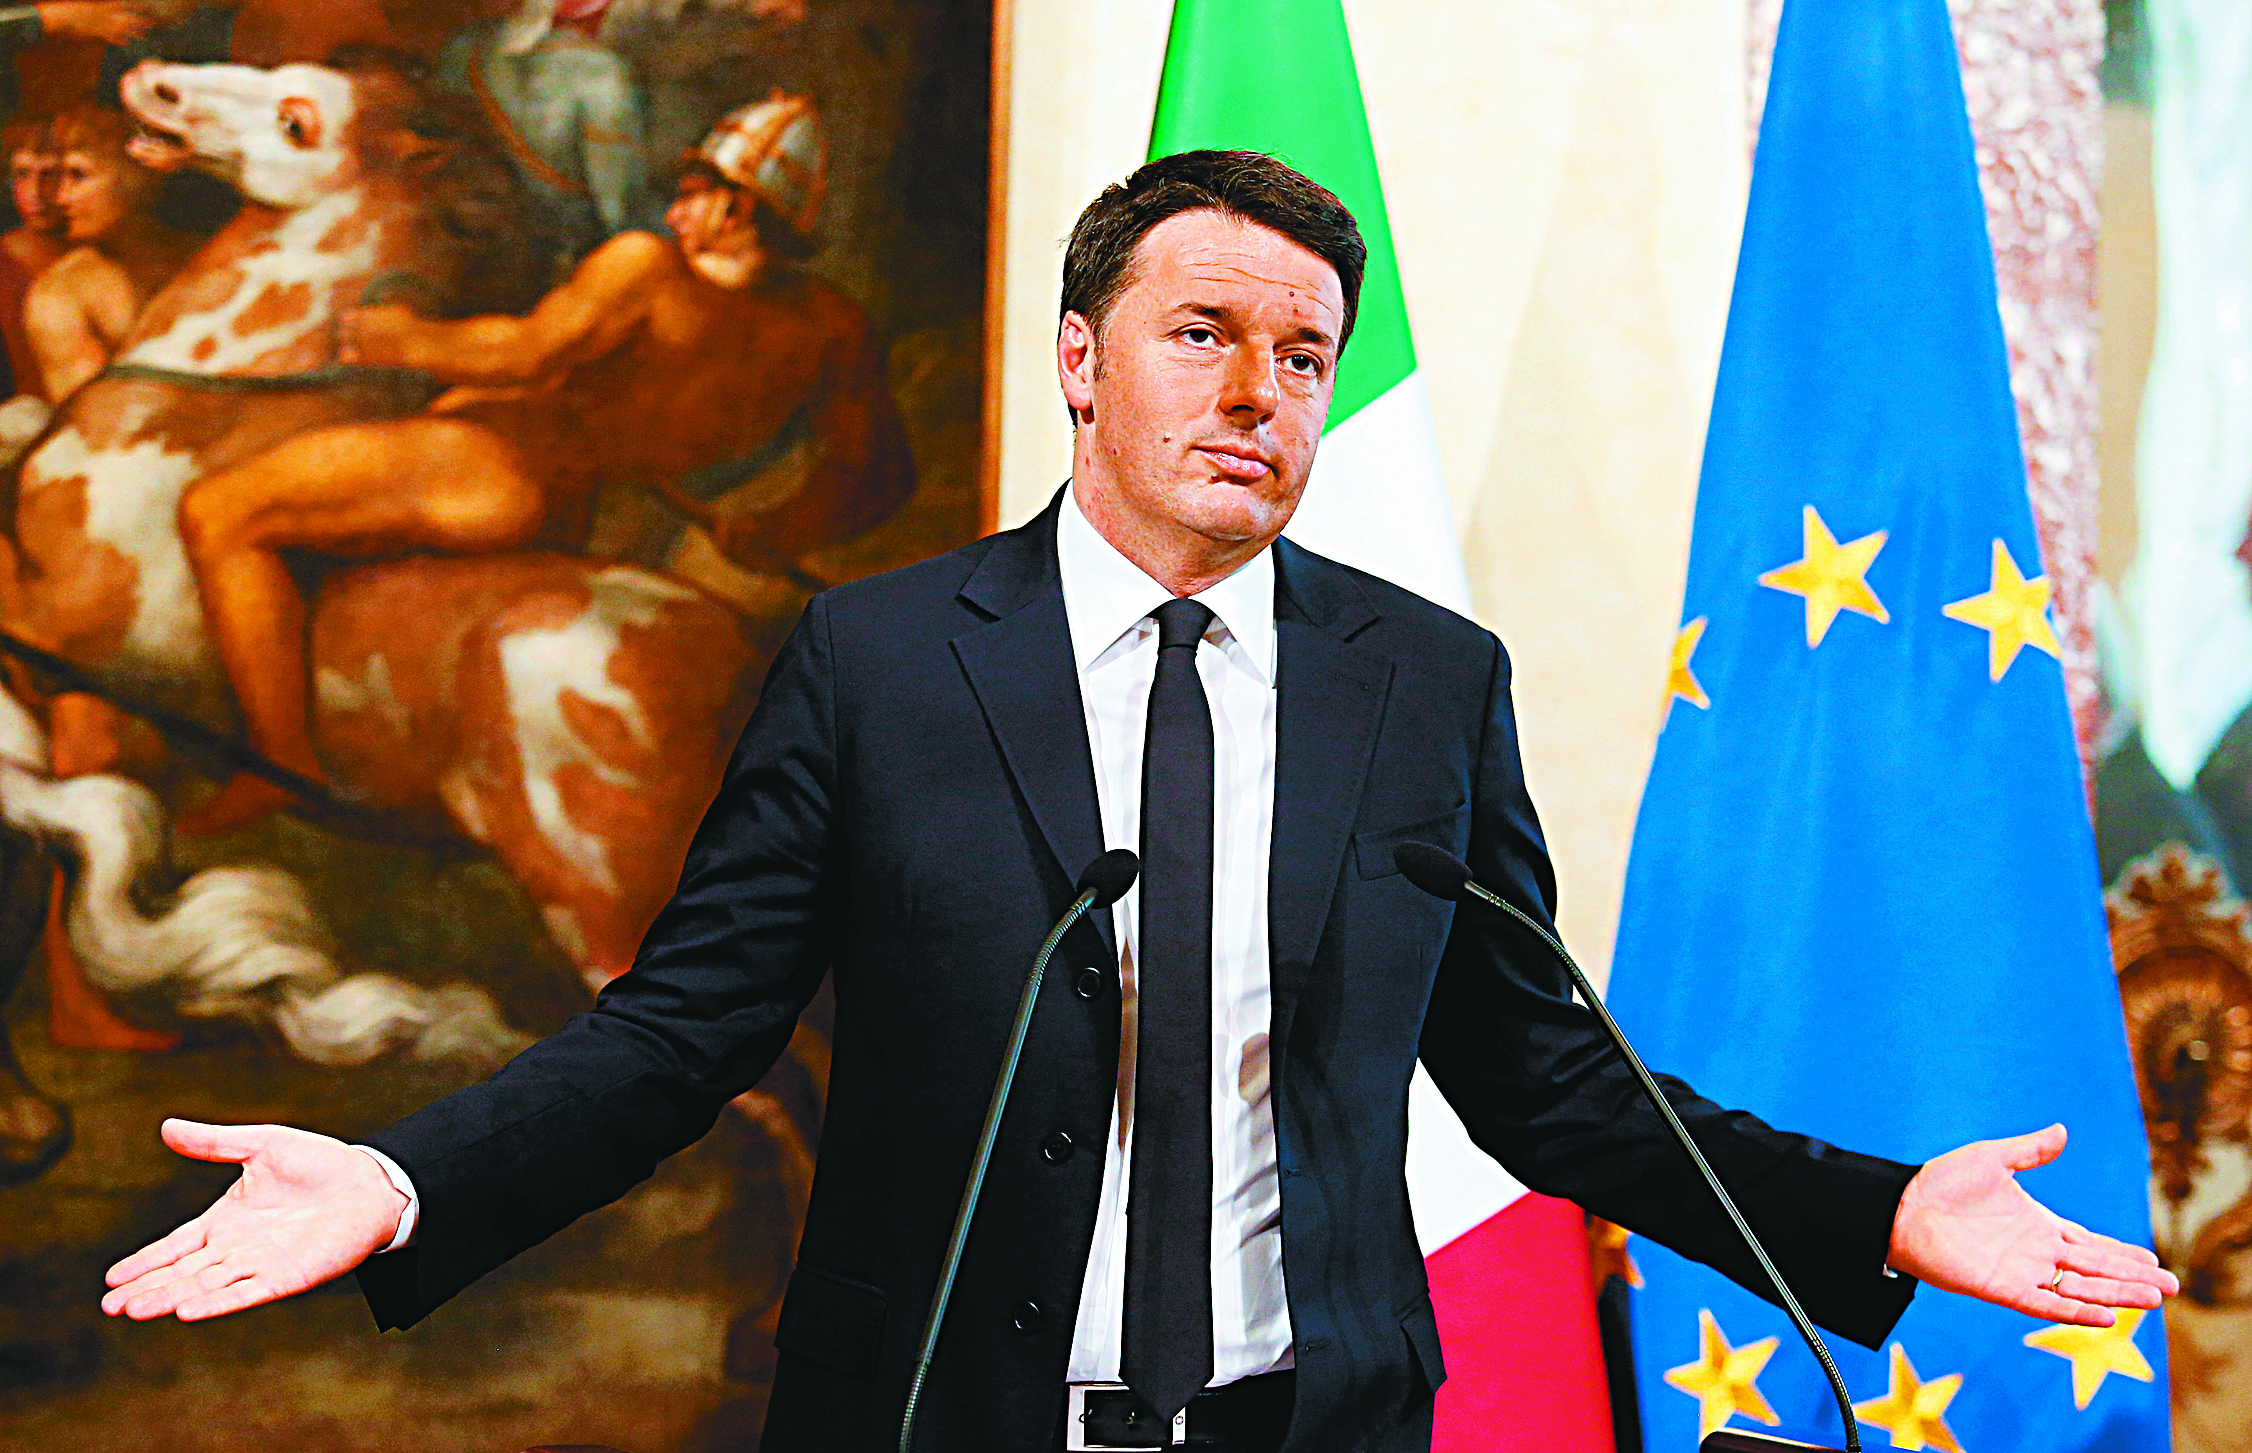 Ιταλία: Παραιτήθηκε ο Ματέο Ρέντσι